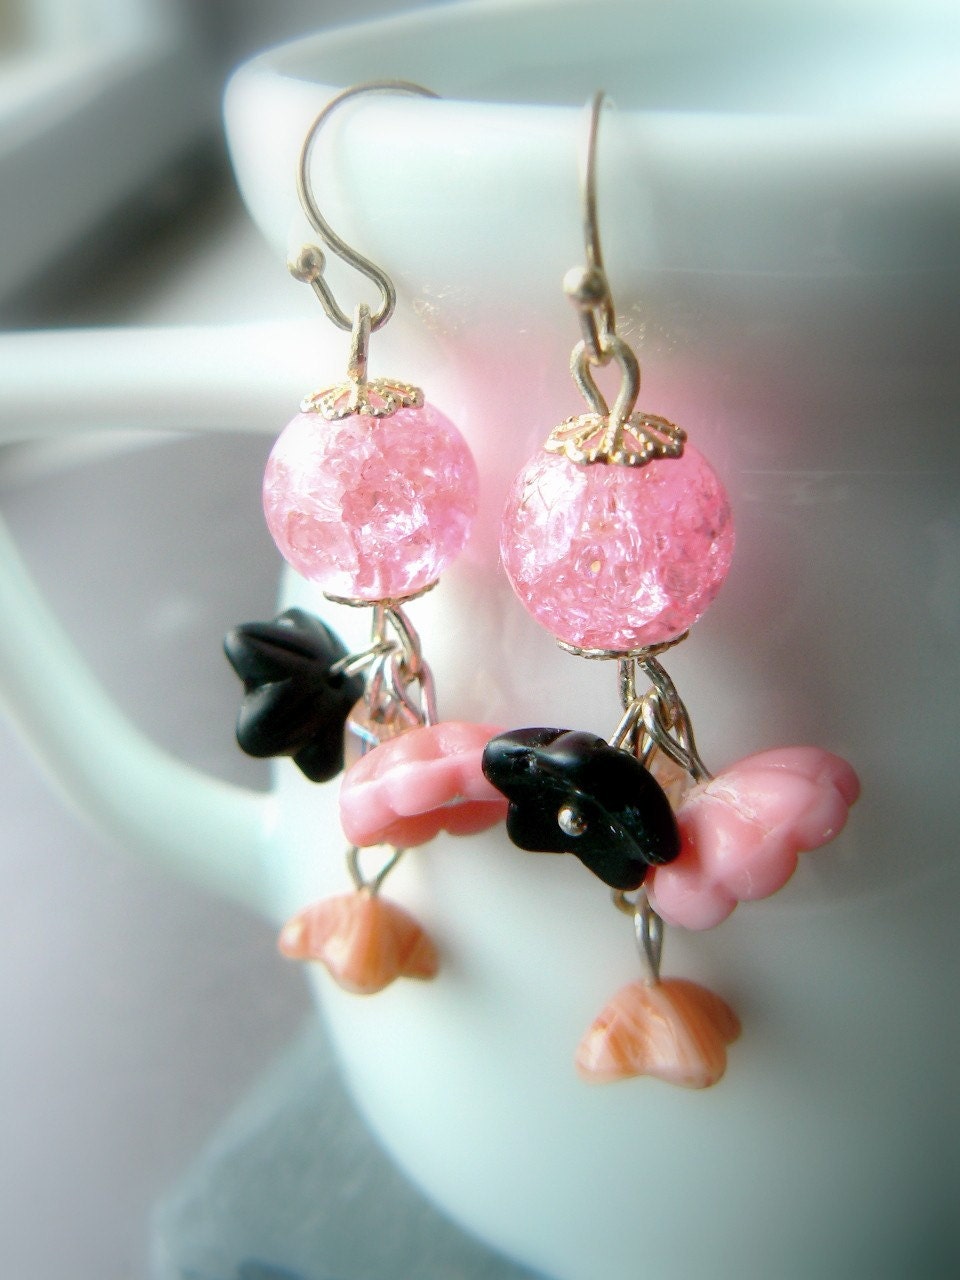 SALE - Rosebud - earrings made of glass beads